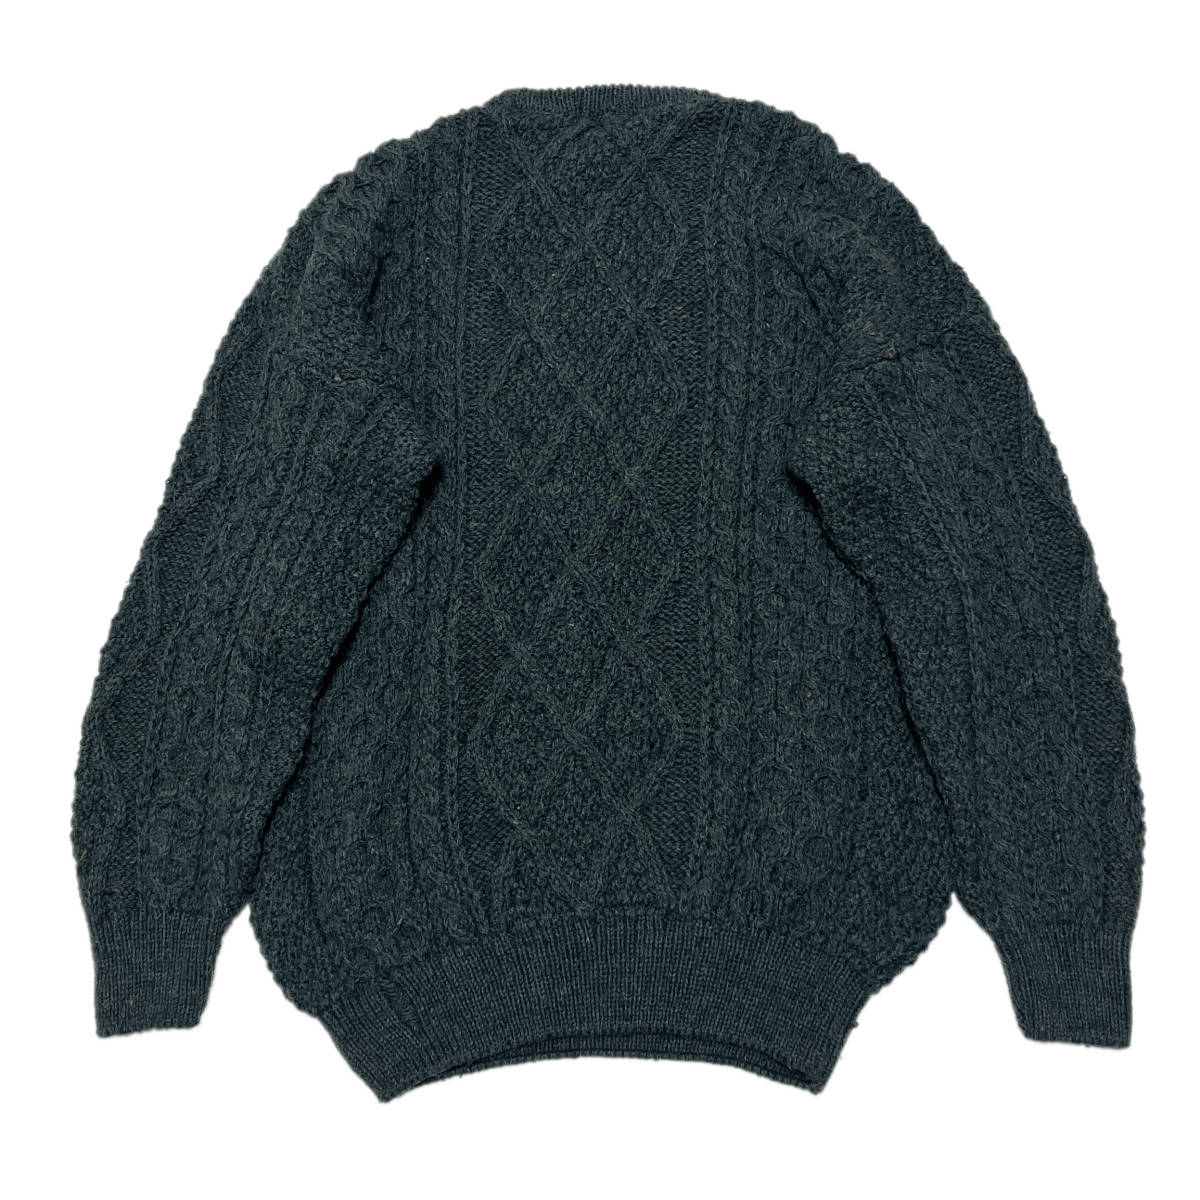  неиспользуемый товар 90\'s Alain вязаный свитер UK производства Англия производства 90 годы рука вязаный Fisherman Vintage евро б/у одежда Europe б/у одежда 